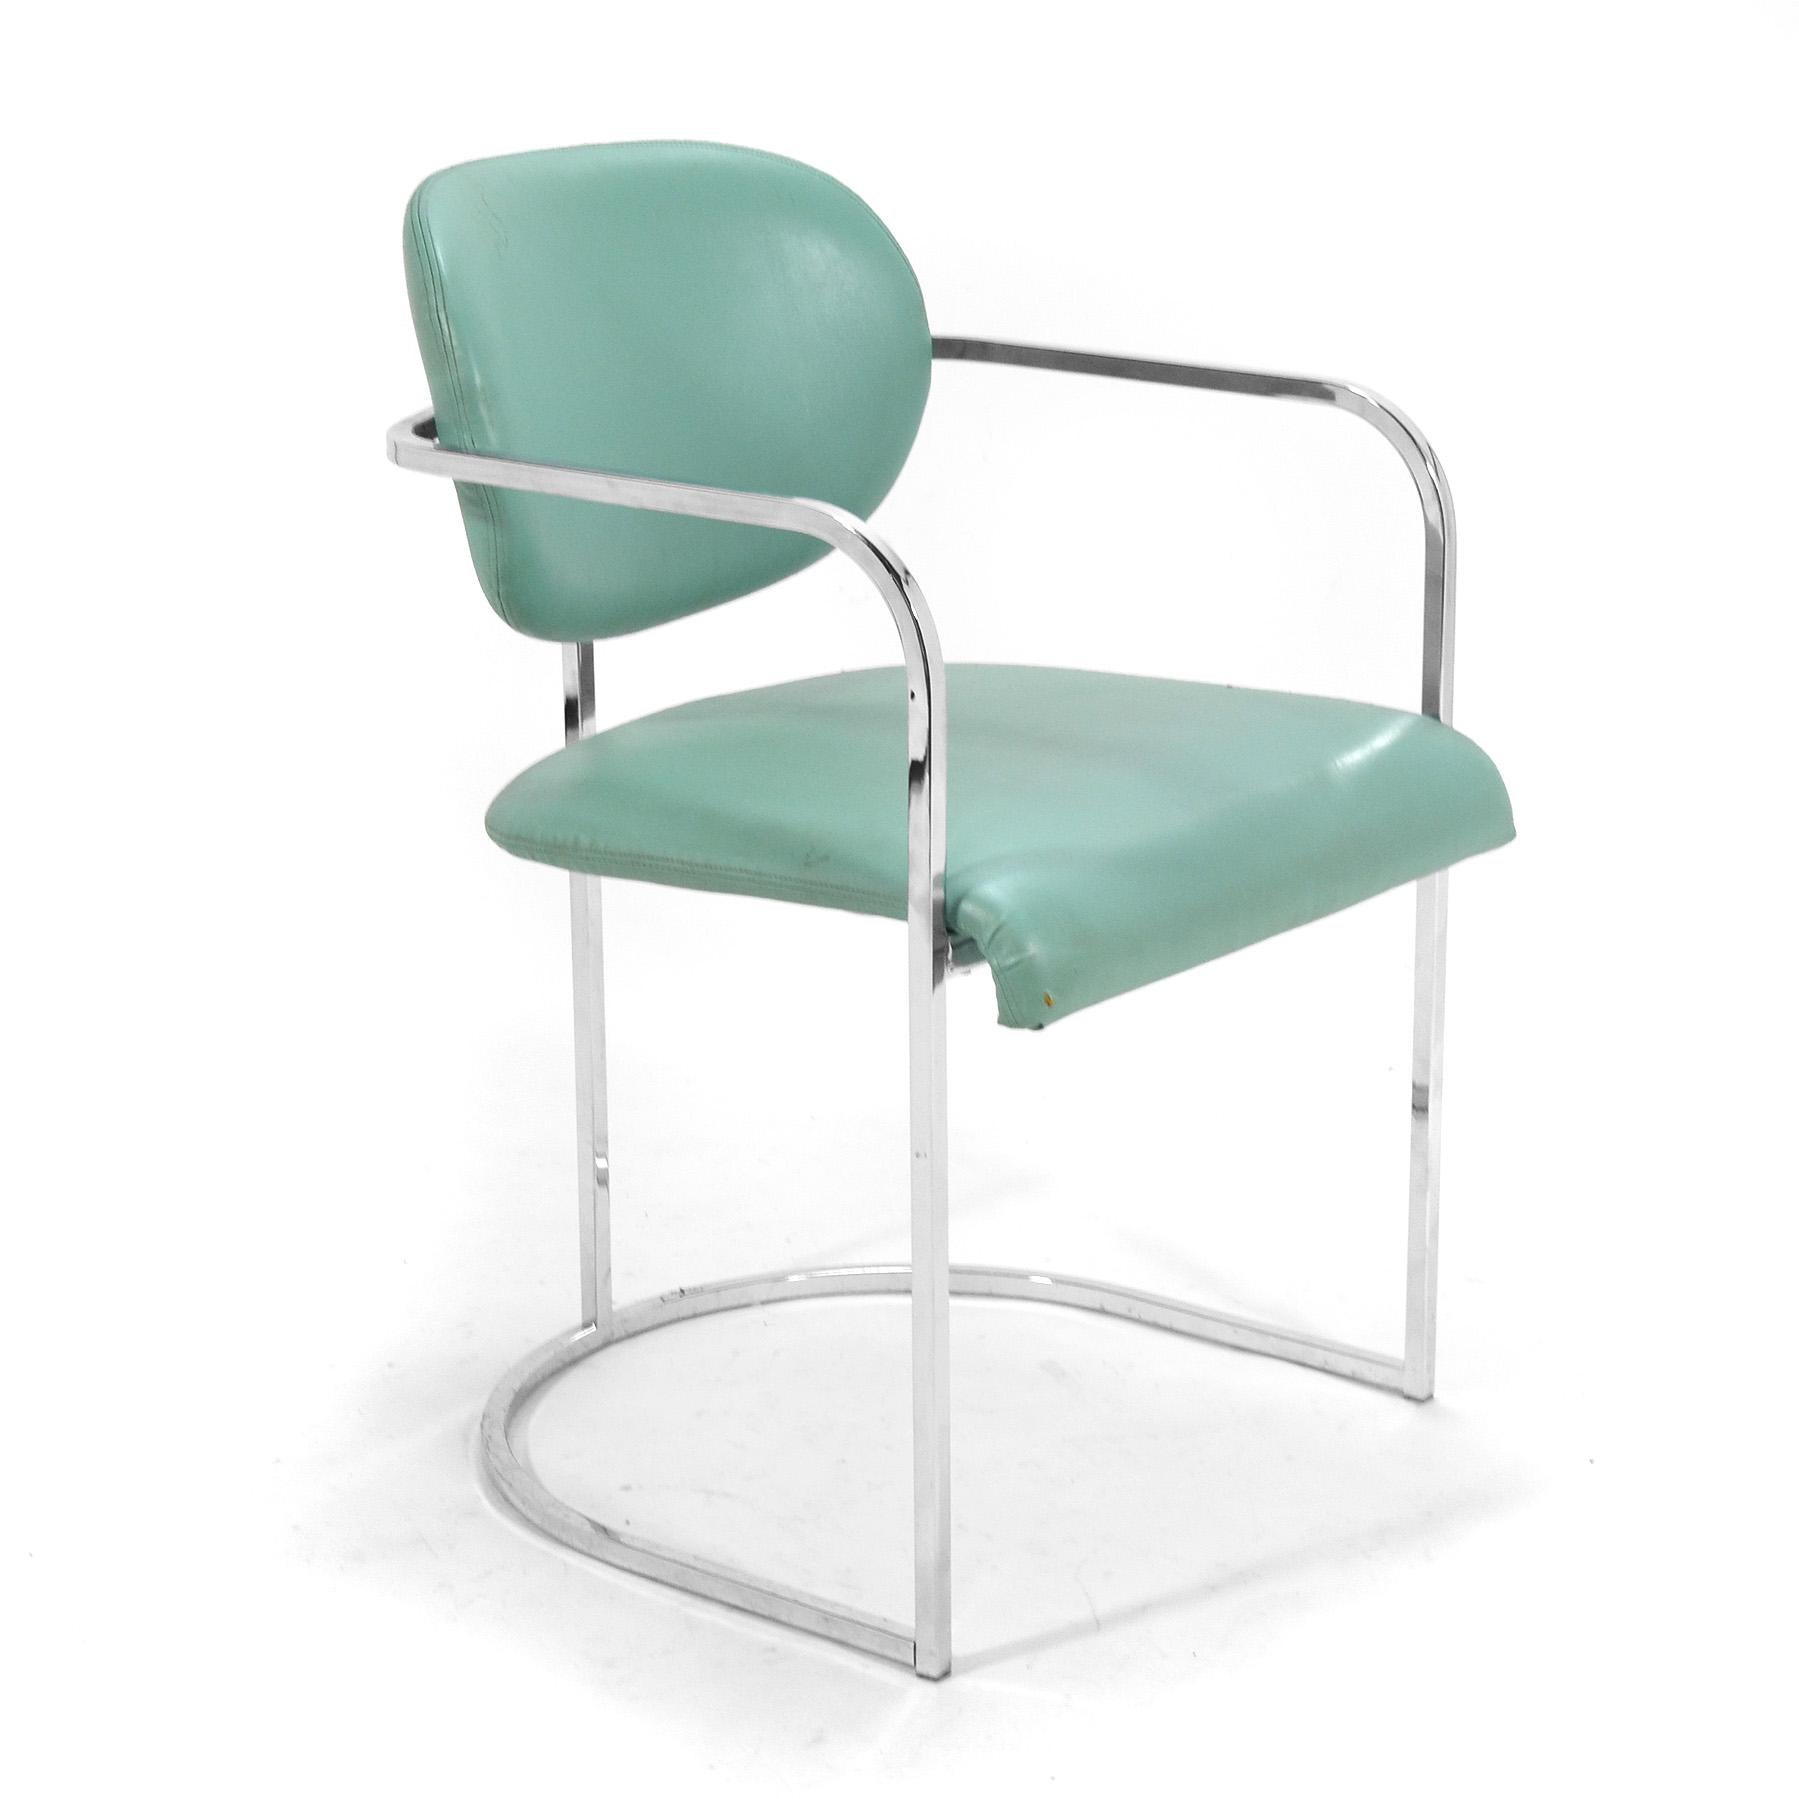 Diese Sessel des Design Institute America haben ein Gestell aus verchromtem Stahl, das die gepolsterten Sitzflächen und Rückenlehnen trägt und ihnen ein schwebendes Aussehen verleiht.
Sie haben noch ihre ursprüngliche türkisfarbene Polsterung,